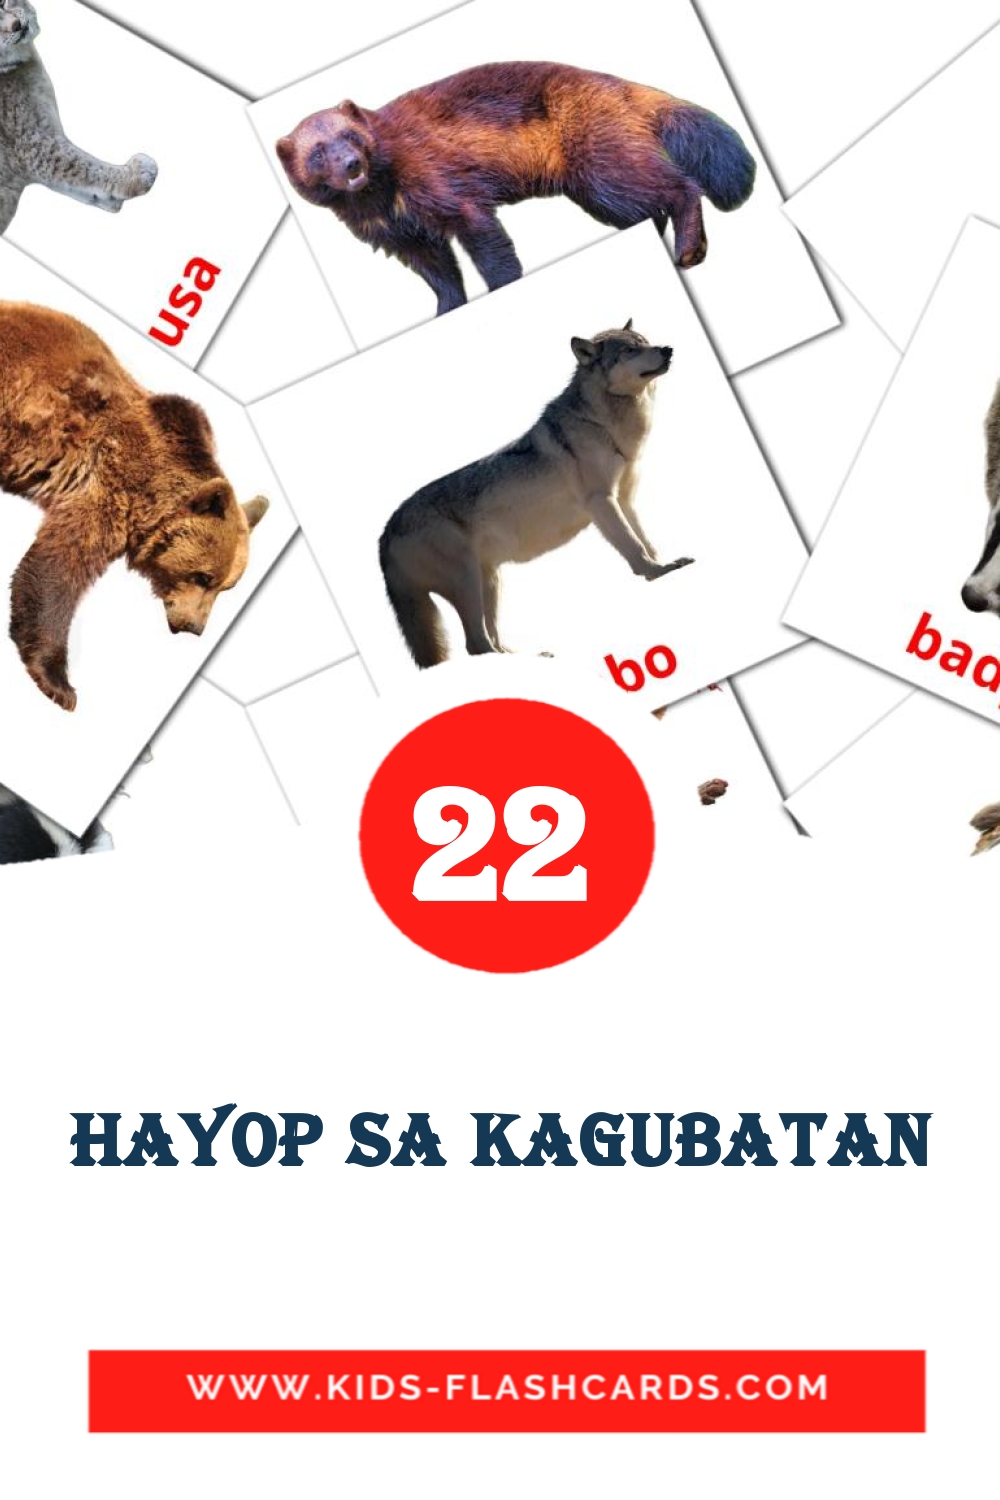 22 tarjetas didacticas de Hayop sa Kagubatan para el jardín de infancia en filipino